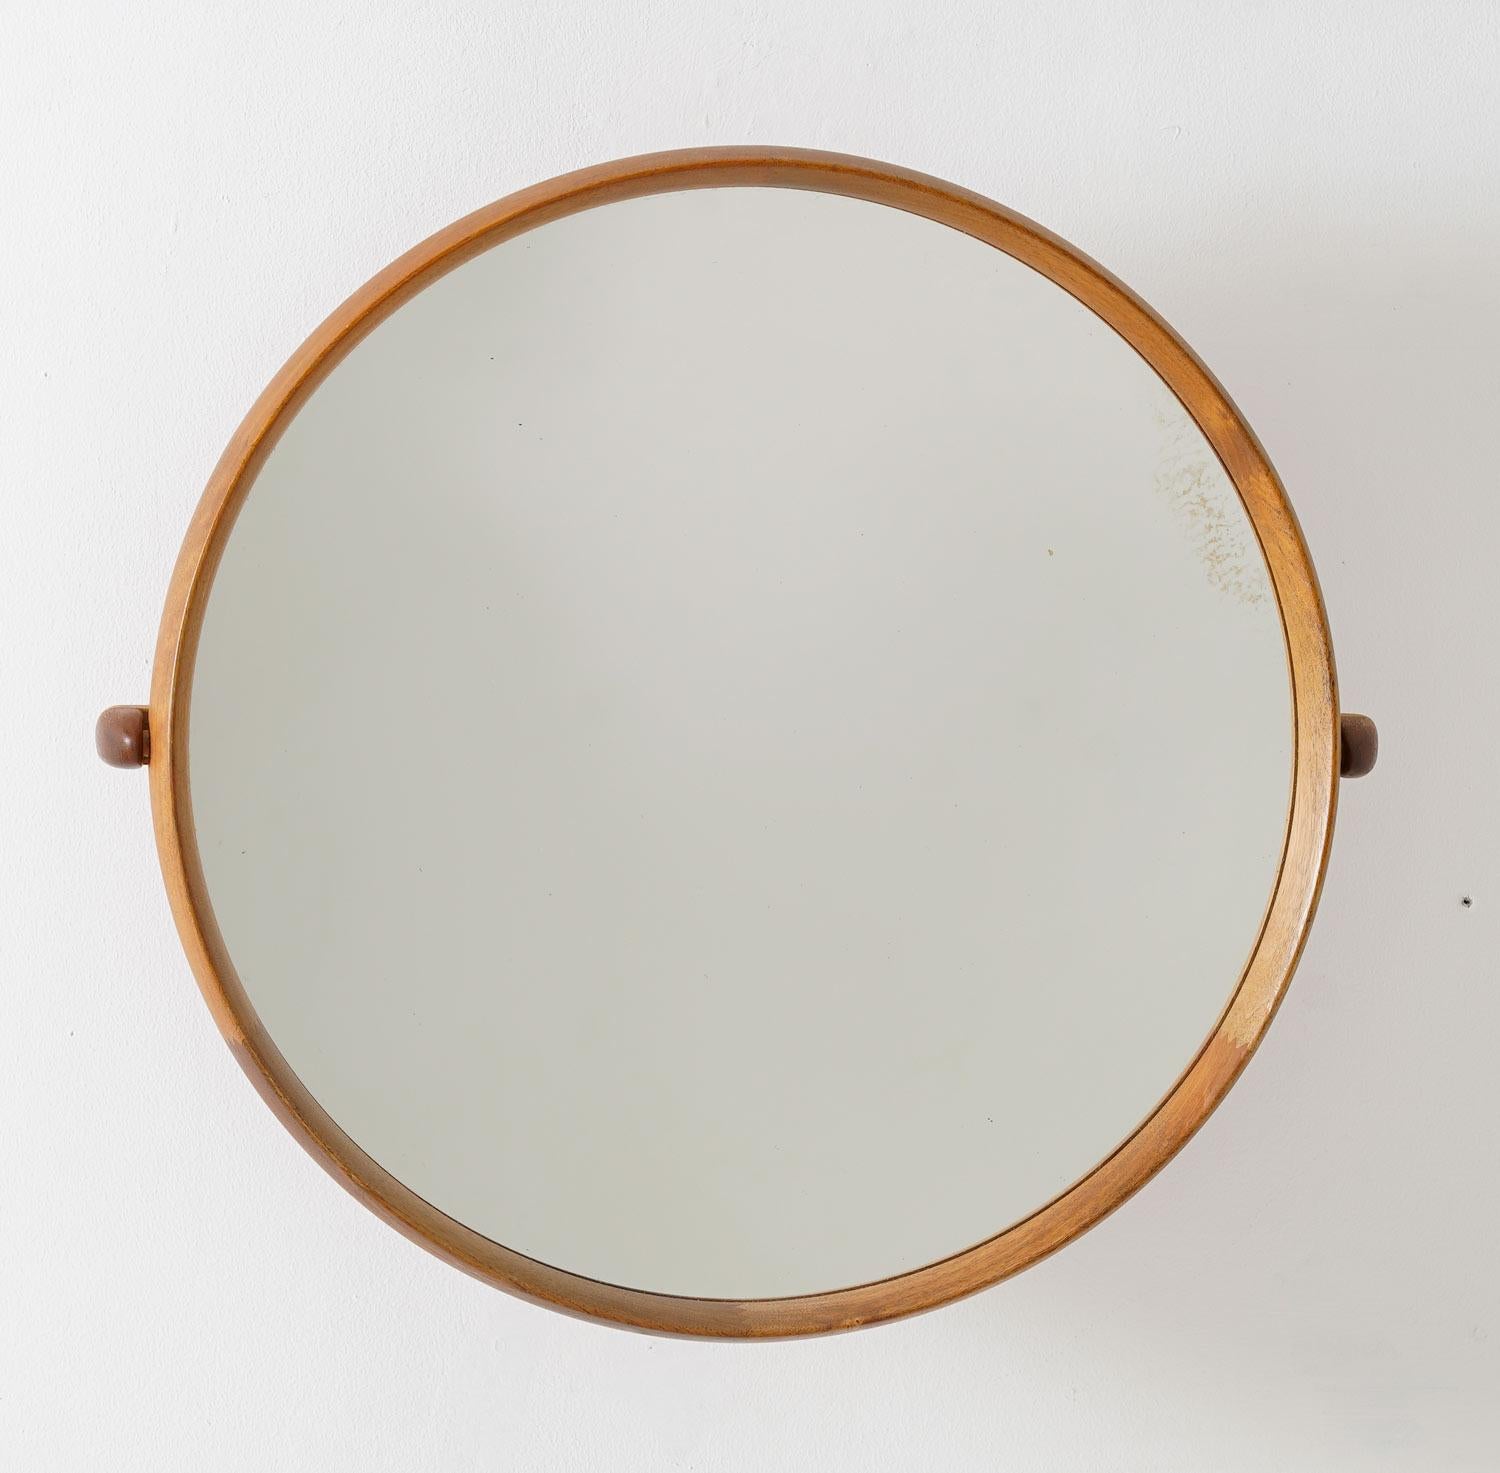 Magnifique miroir rond du milieu du siècle par Uno & Östen Kristiansson pour Luxus, Suède.
Le miroir mural avec un bras pivotant est fabriqué en teck avec des détails en chêne. 

Condition : Très bon état avec des signes d'âge sur le verre du